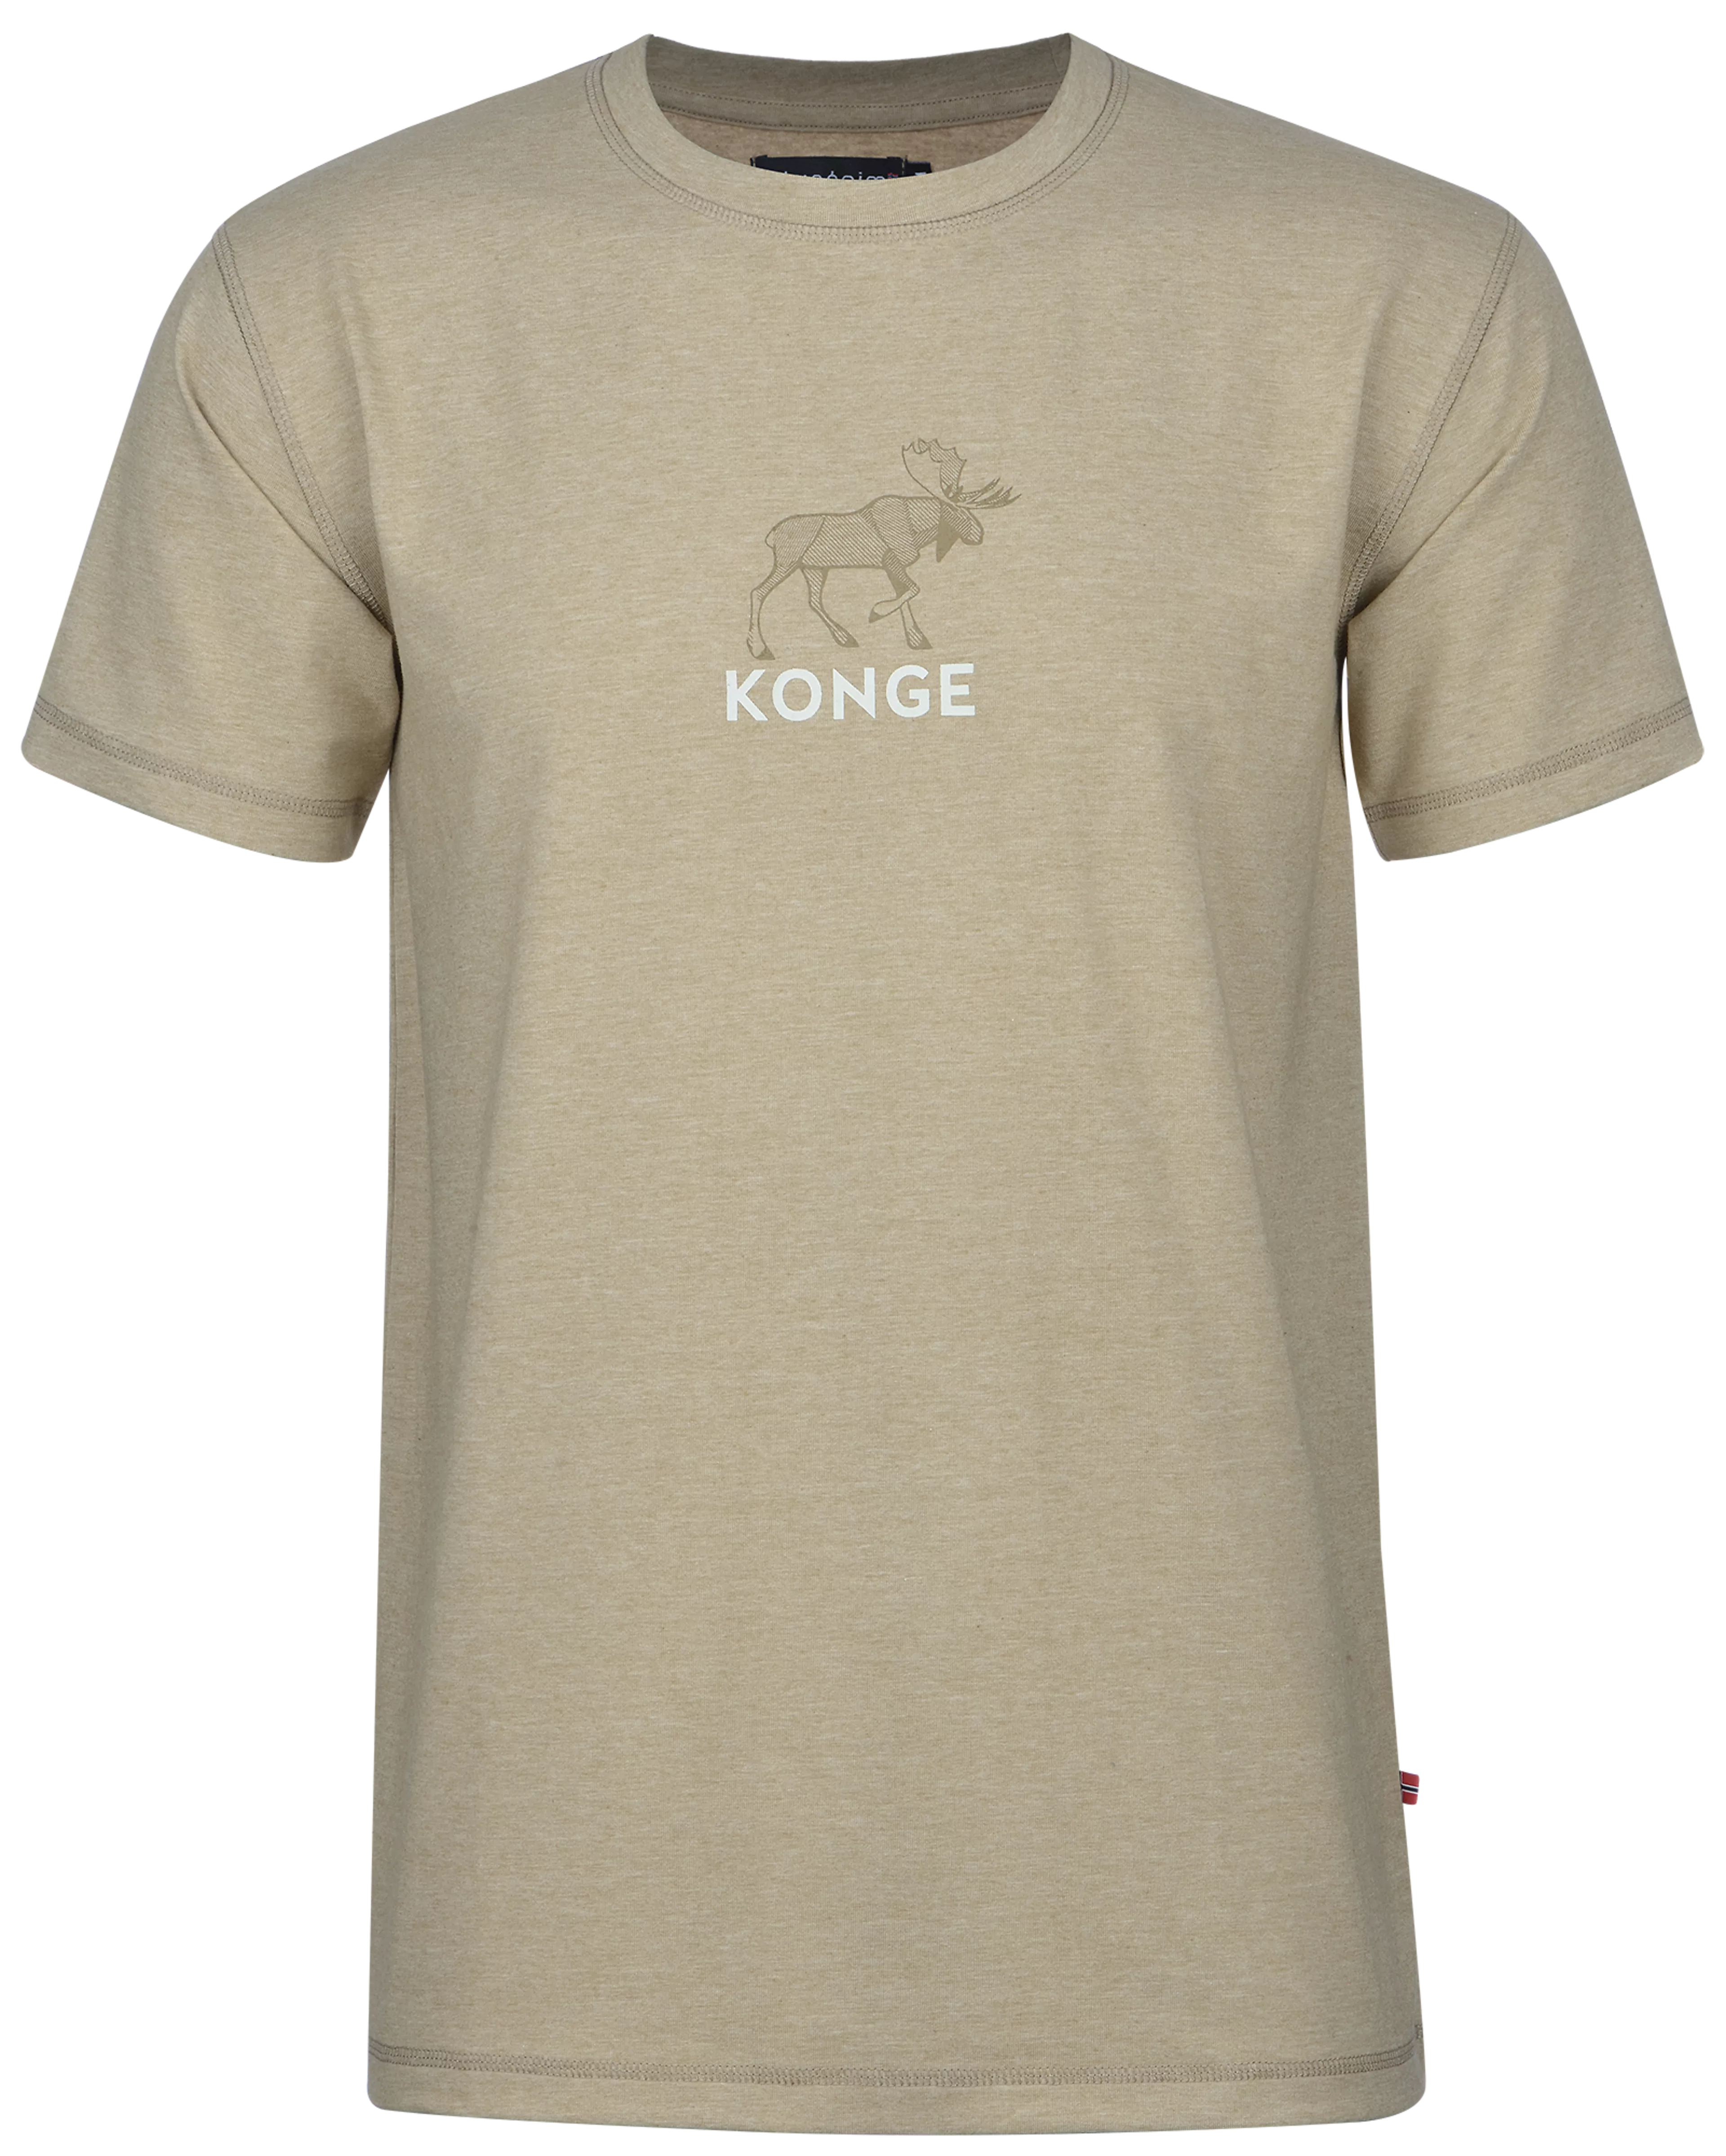 Konge/Silver Sage